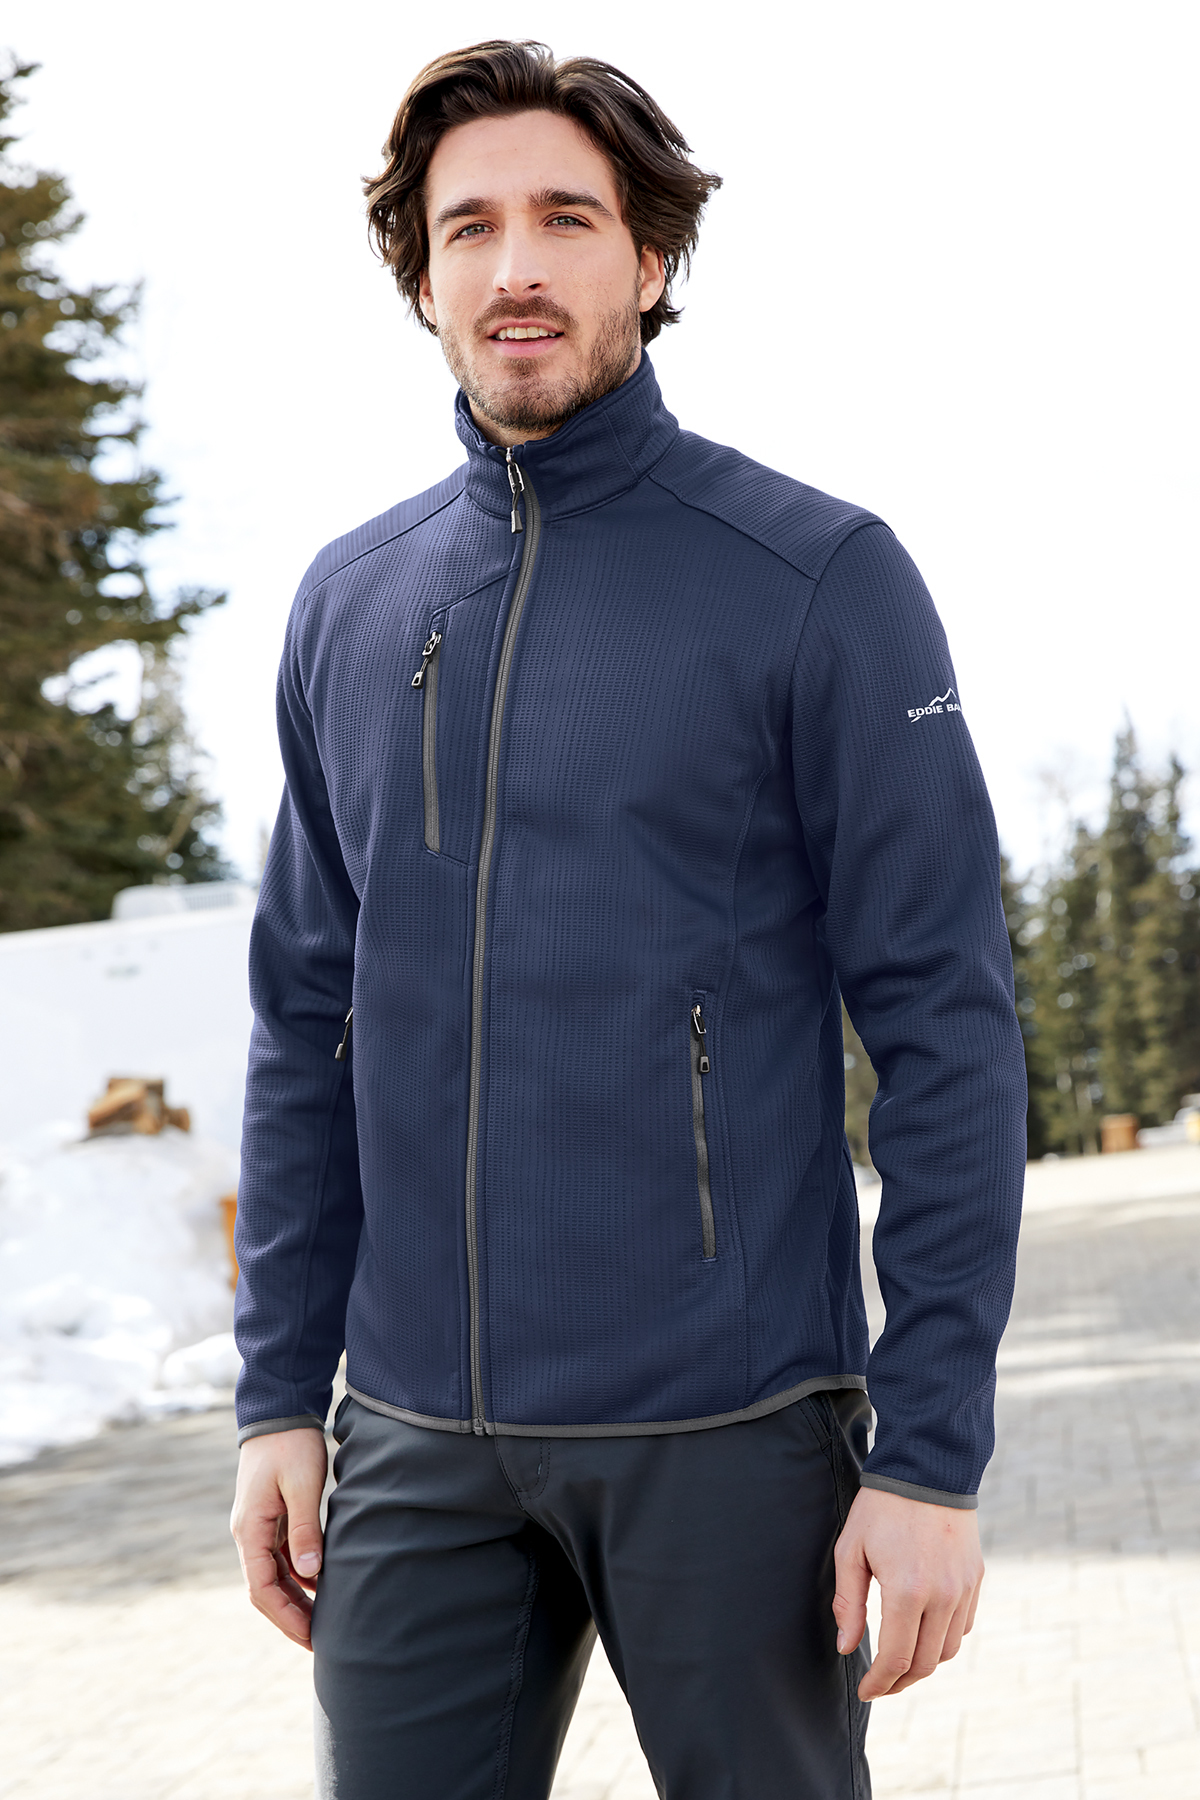 Eddie Bauer Dash Full-Zip Fleece Jacket, Product